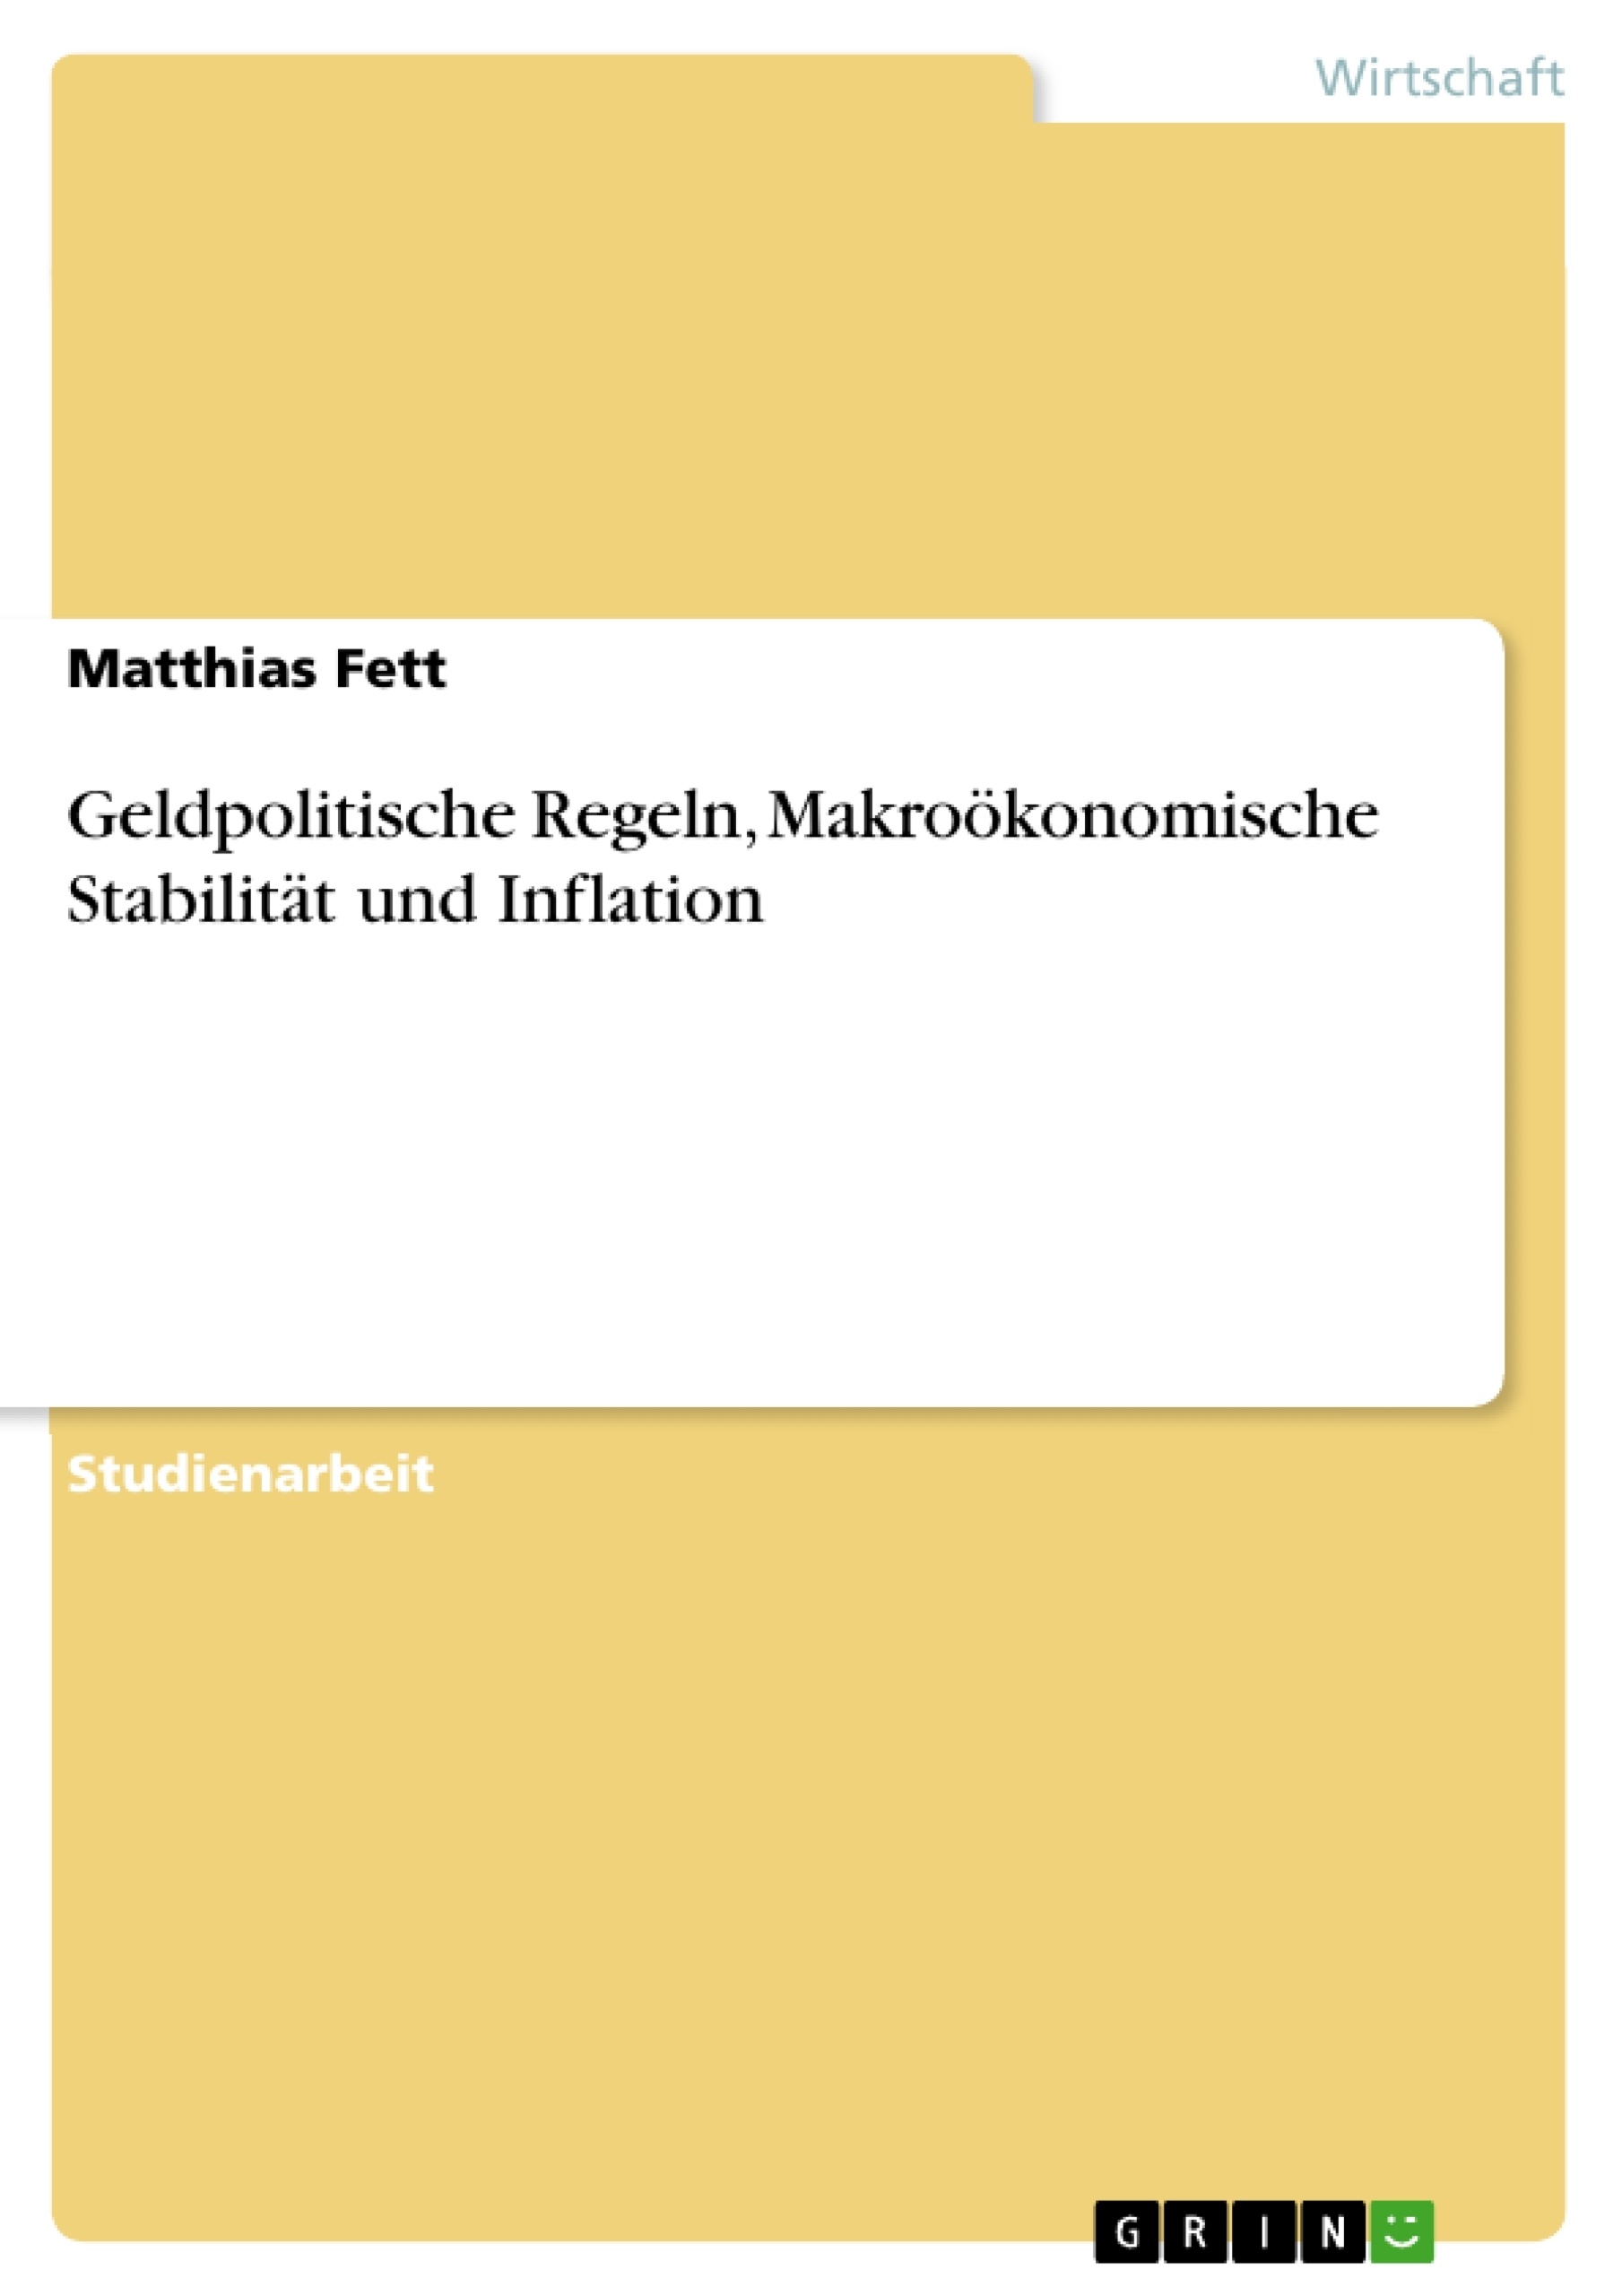 Title: Geldpolitische Regeln, Makroökonomische Stabilität und Inflation